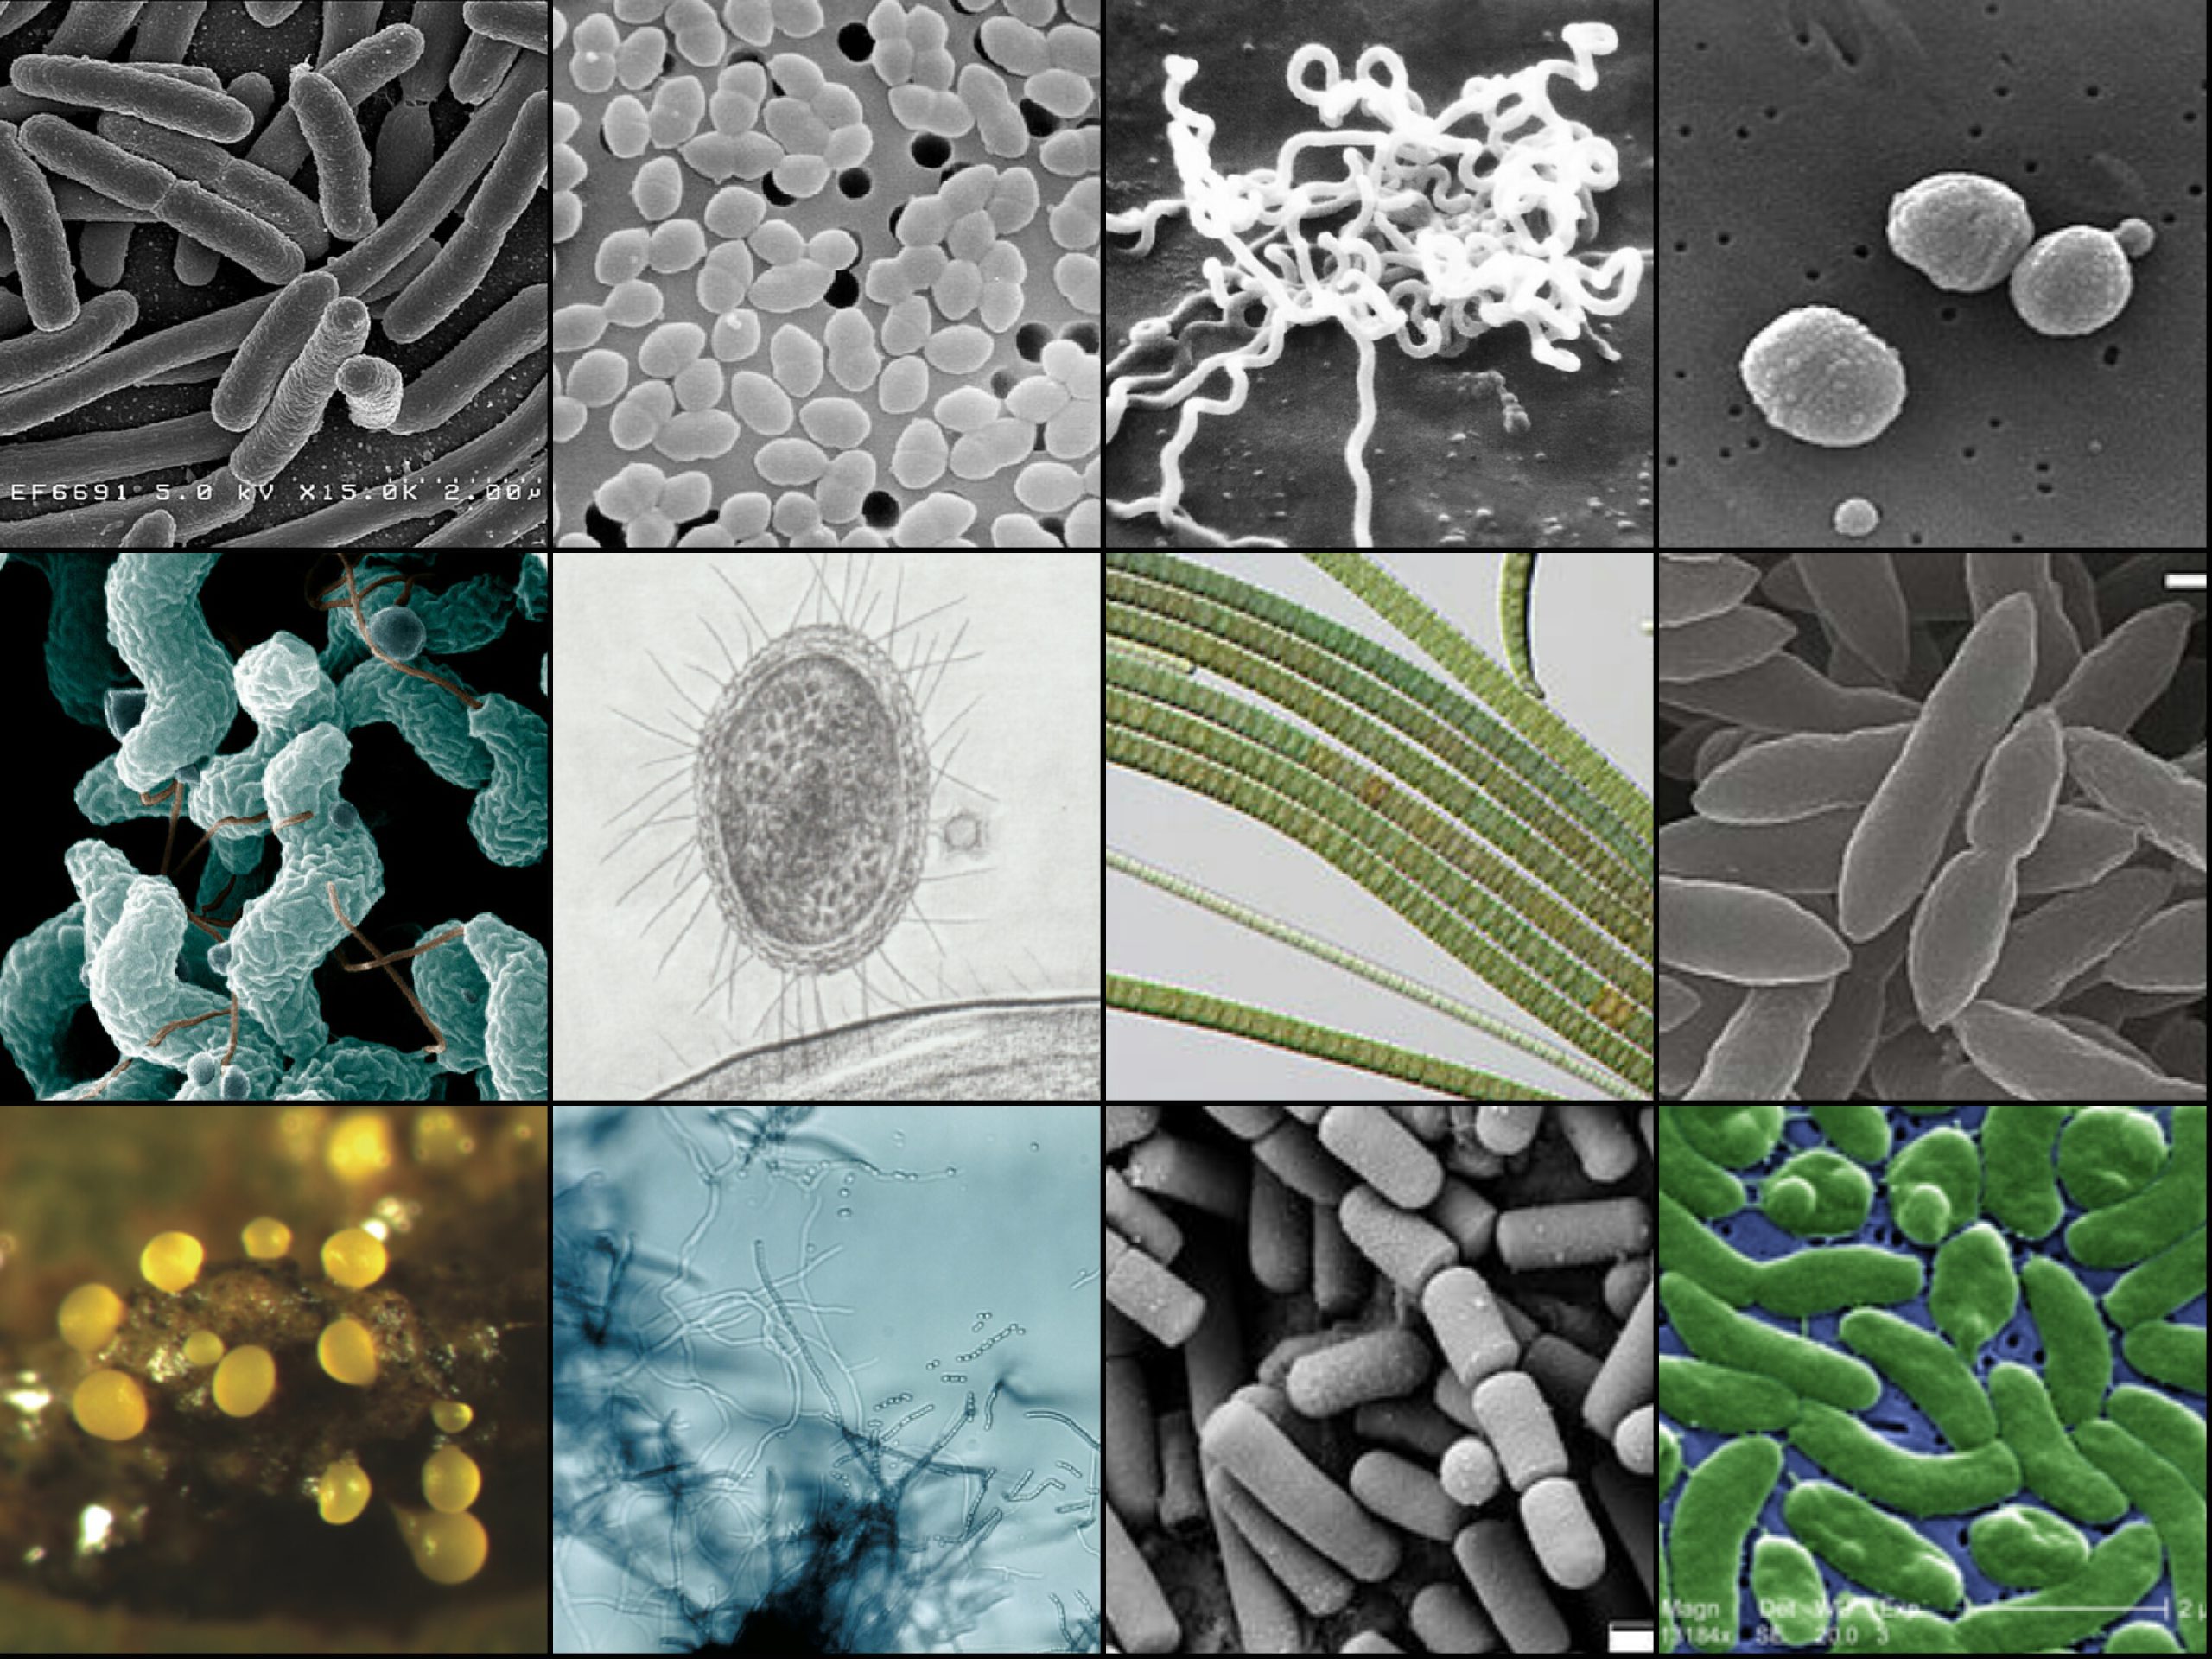 WHO؛ فهرست مهم ترین باکتری های مقاوم به آنتی بیوتیک را بروزرسانی کرد.